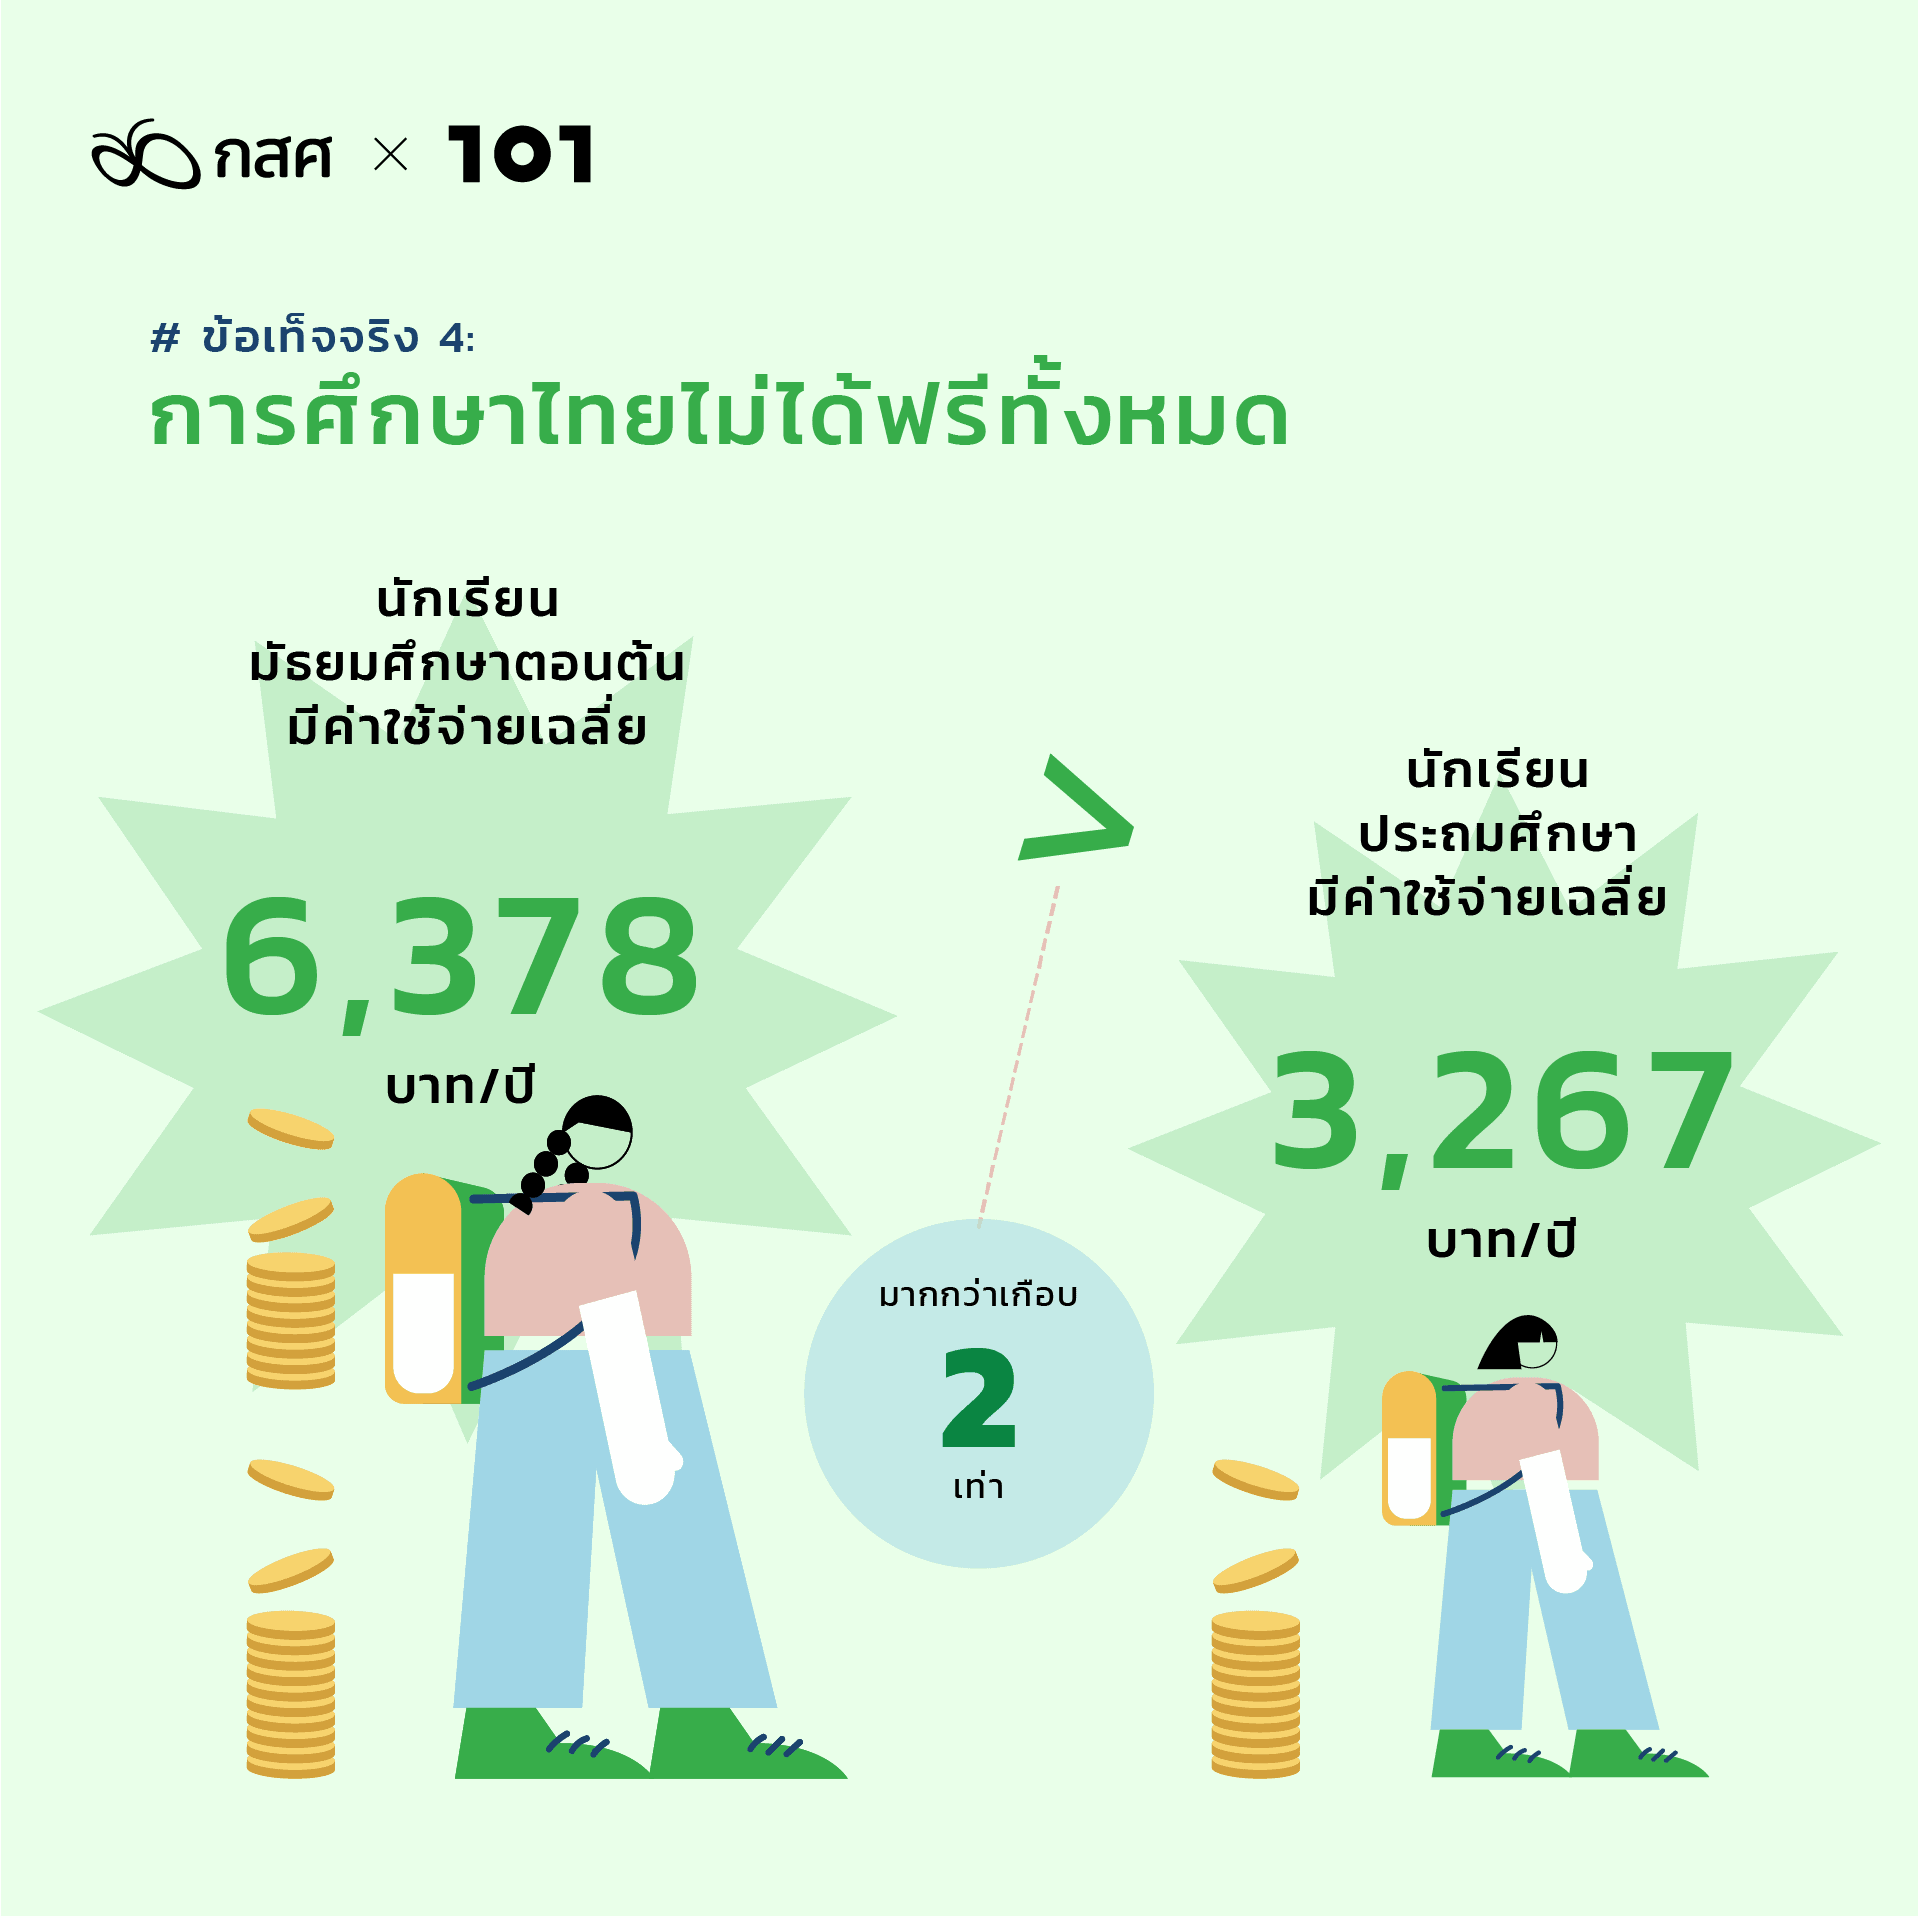 สำรวจความเหลื่อมล้ำการศึกษาไทย เพิ่มโอกาสให้เด็กยากจน: ข้อเท็จจริง 4: การศึกษาไทยไม่ได้ฟรีทั้งหมด